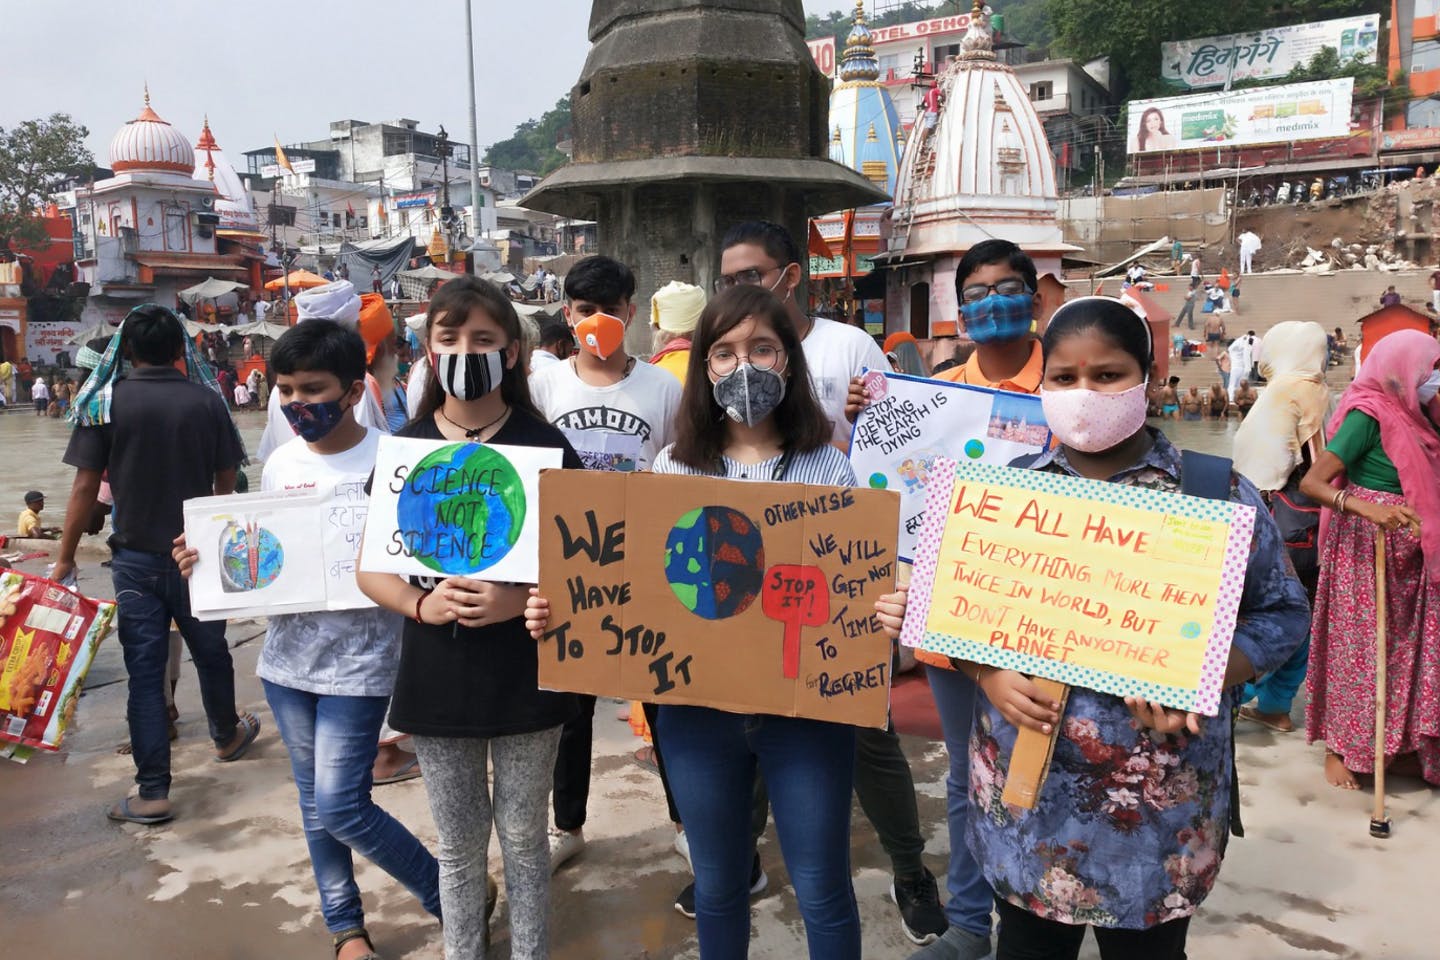 Manifestation de jeunes militants pour le climat en Inde à l'occasion de "Fridays for future", le 1er octobre 2021. (Source : Eco-business)